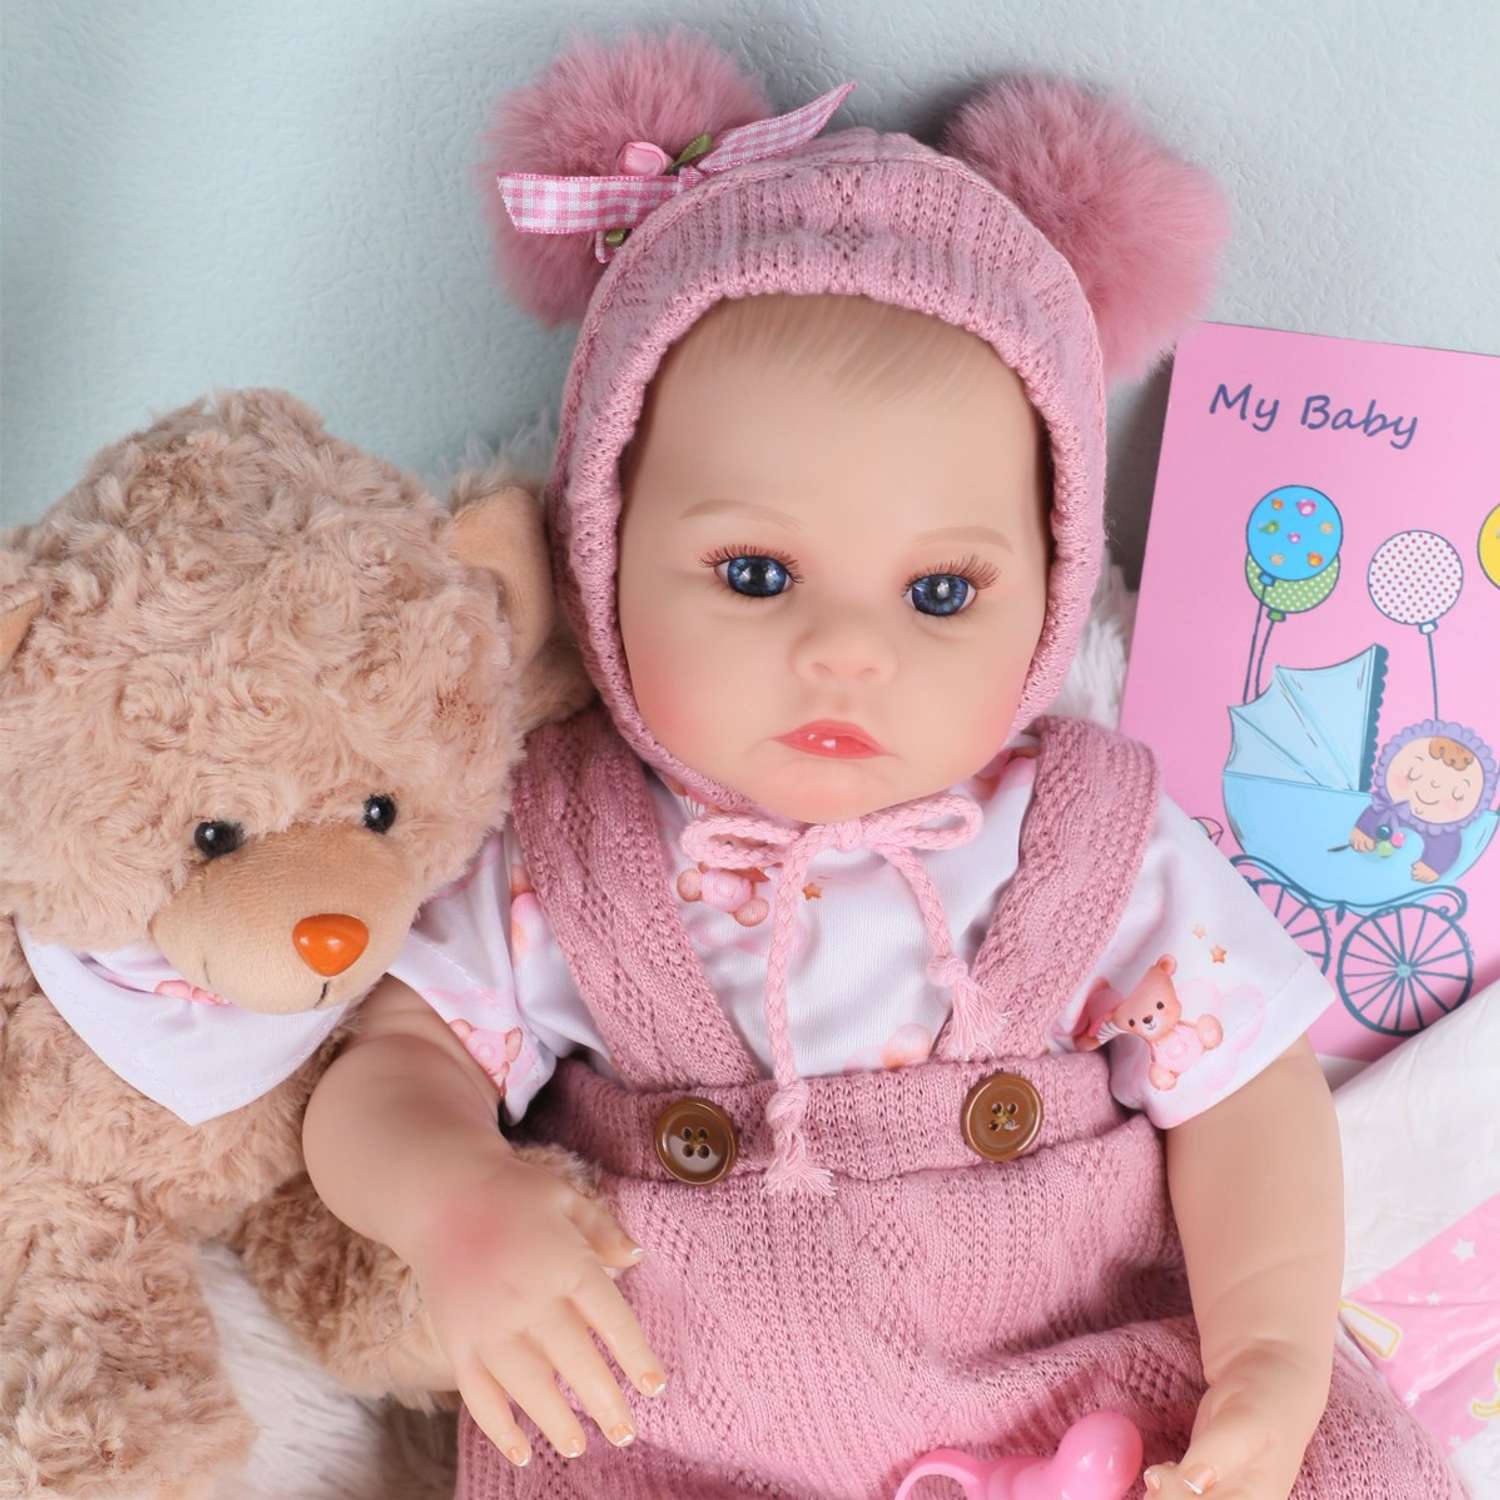 Кукла Реборн QA BABY Анна пупс с соской набор игрушки для девочки 45 см 42003 - фото 2